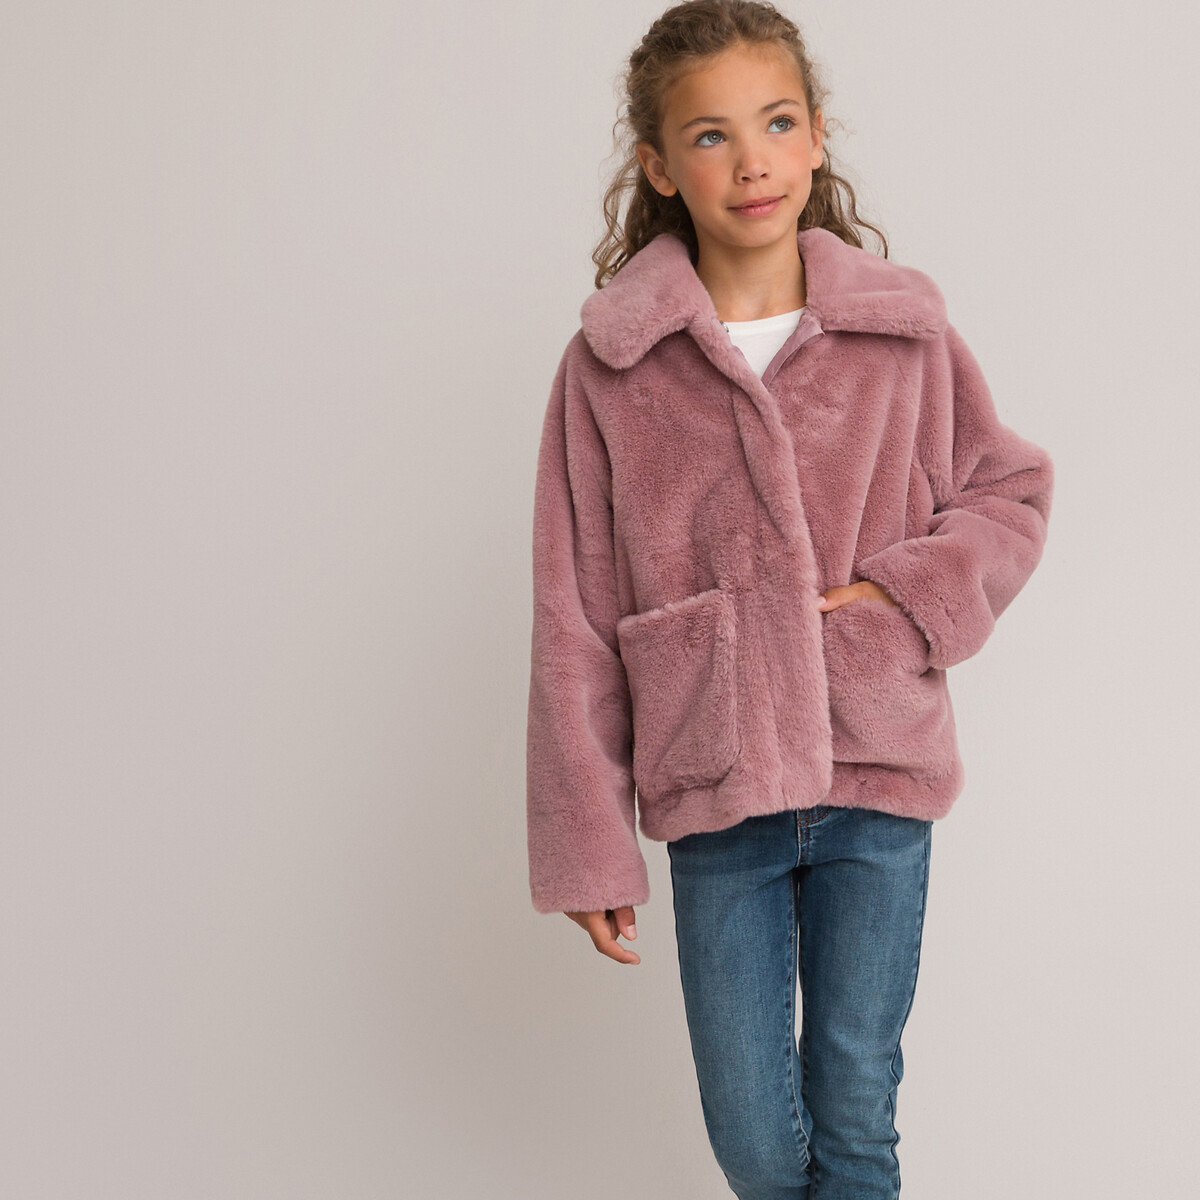 Пальто Утепленное из искусственного меха 3 года - 94 см розовый LaRedoute, размер 3 года - 94 см